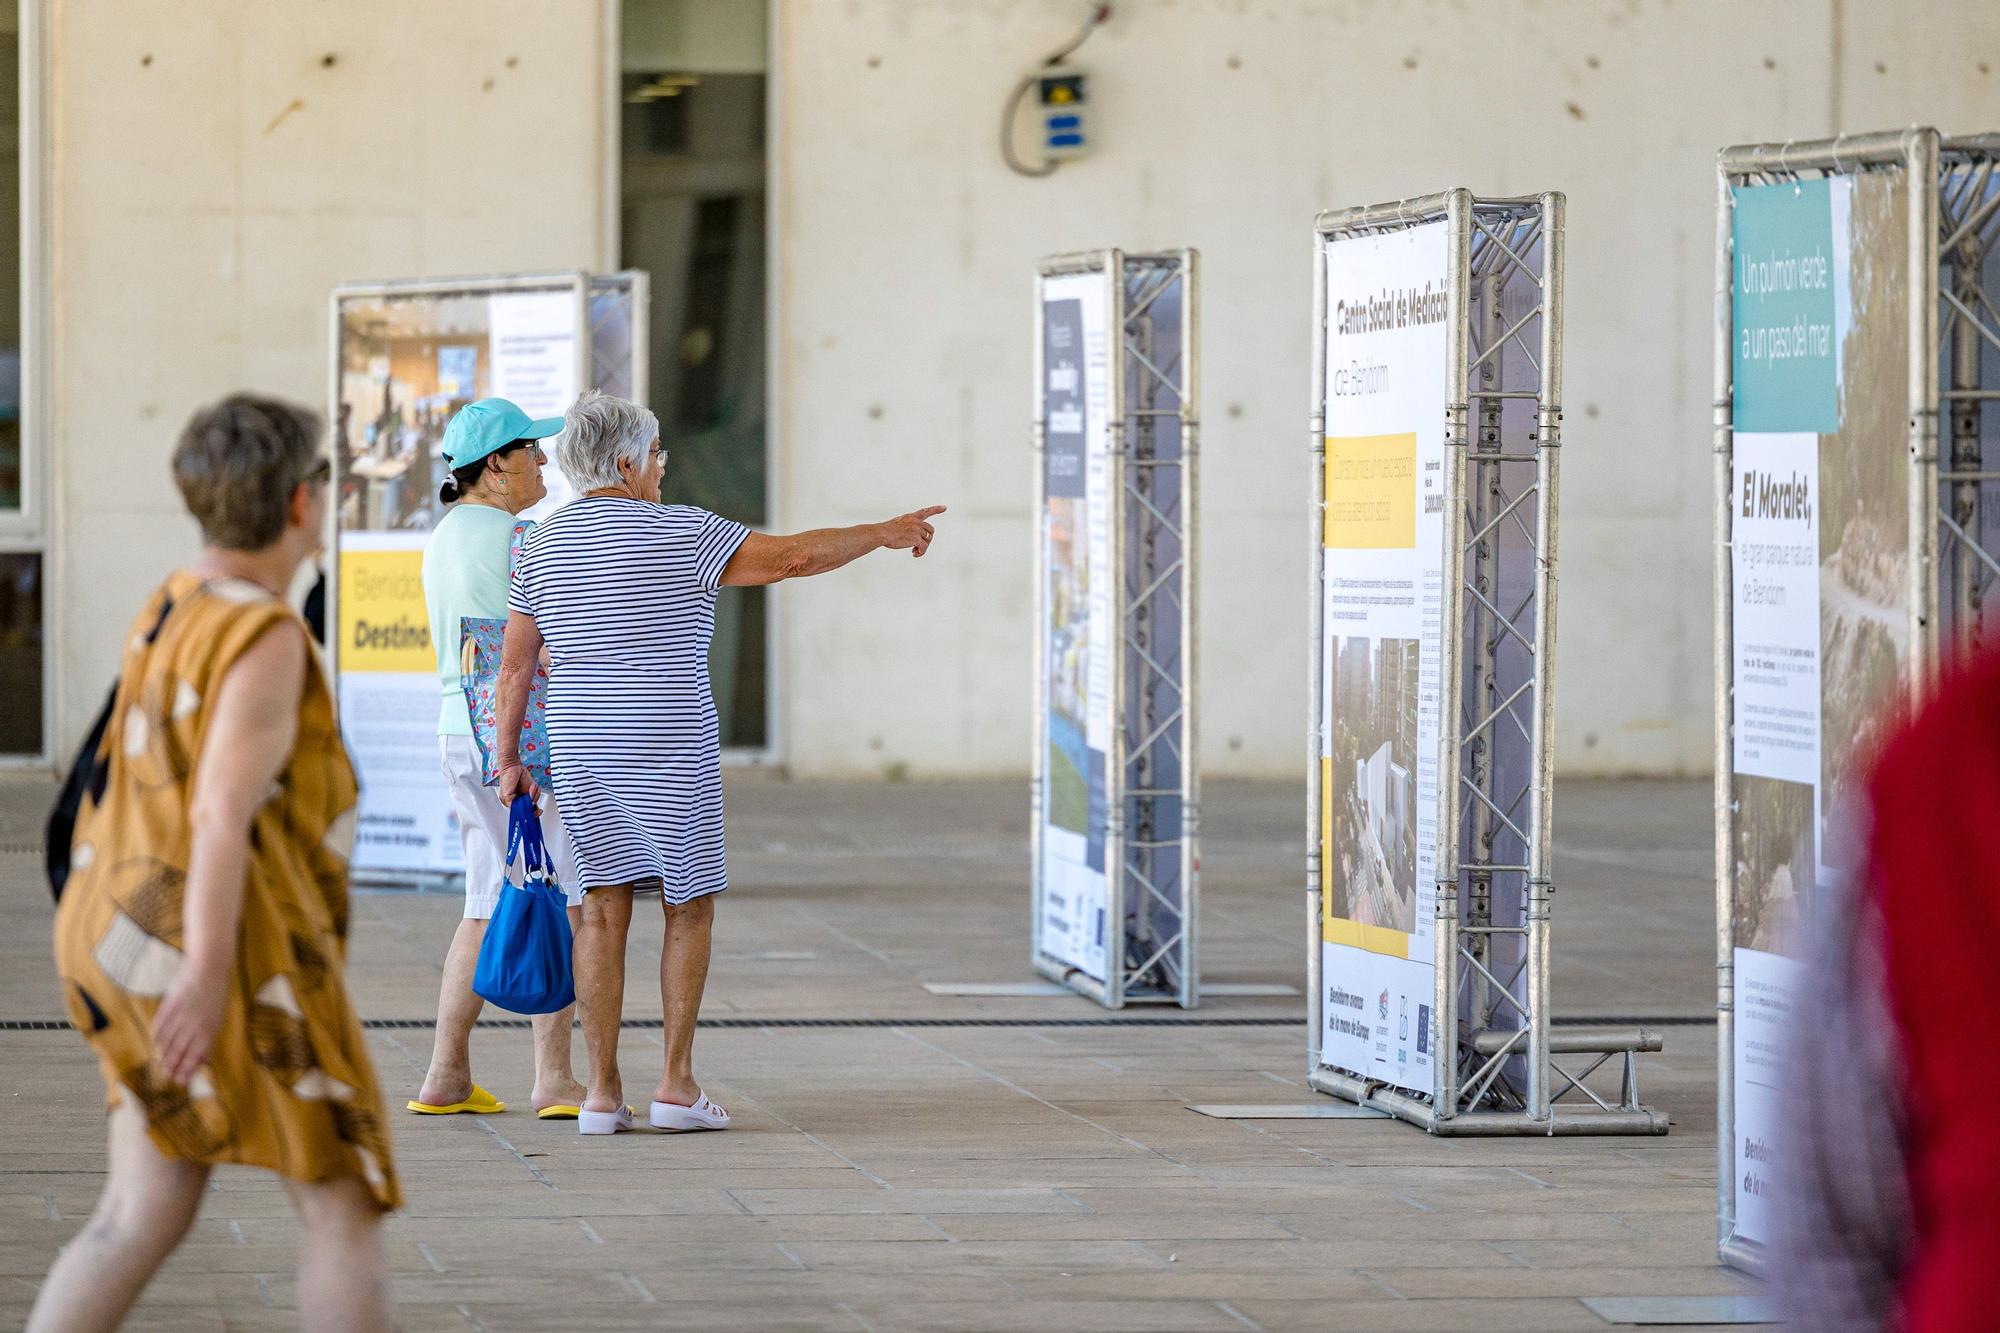 Una exposición al aire libre recoge en ocho paneles los proyectos que integran la EDUSI (Estrategia de Desarrollo Urbano Sostenible e Integrado).